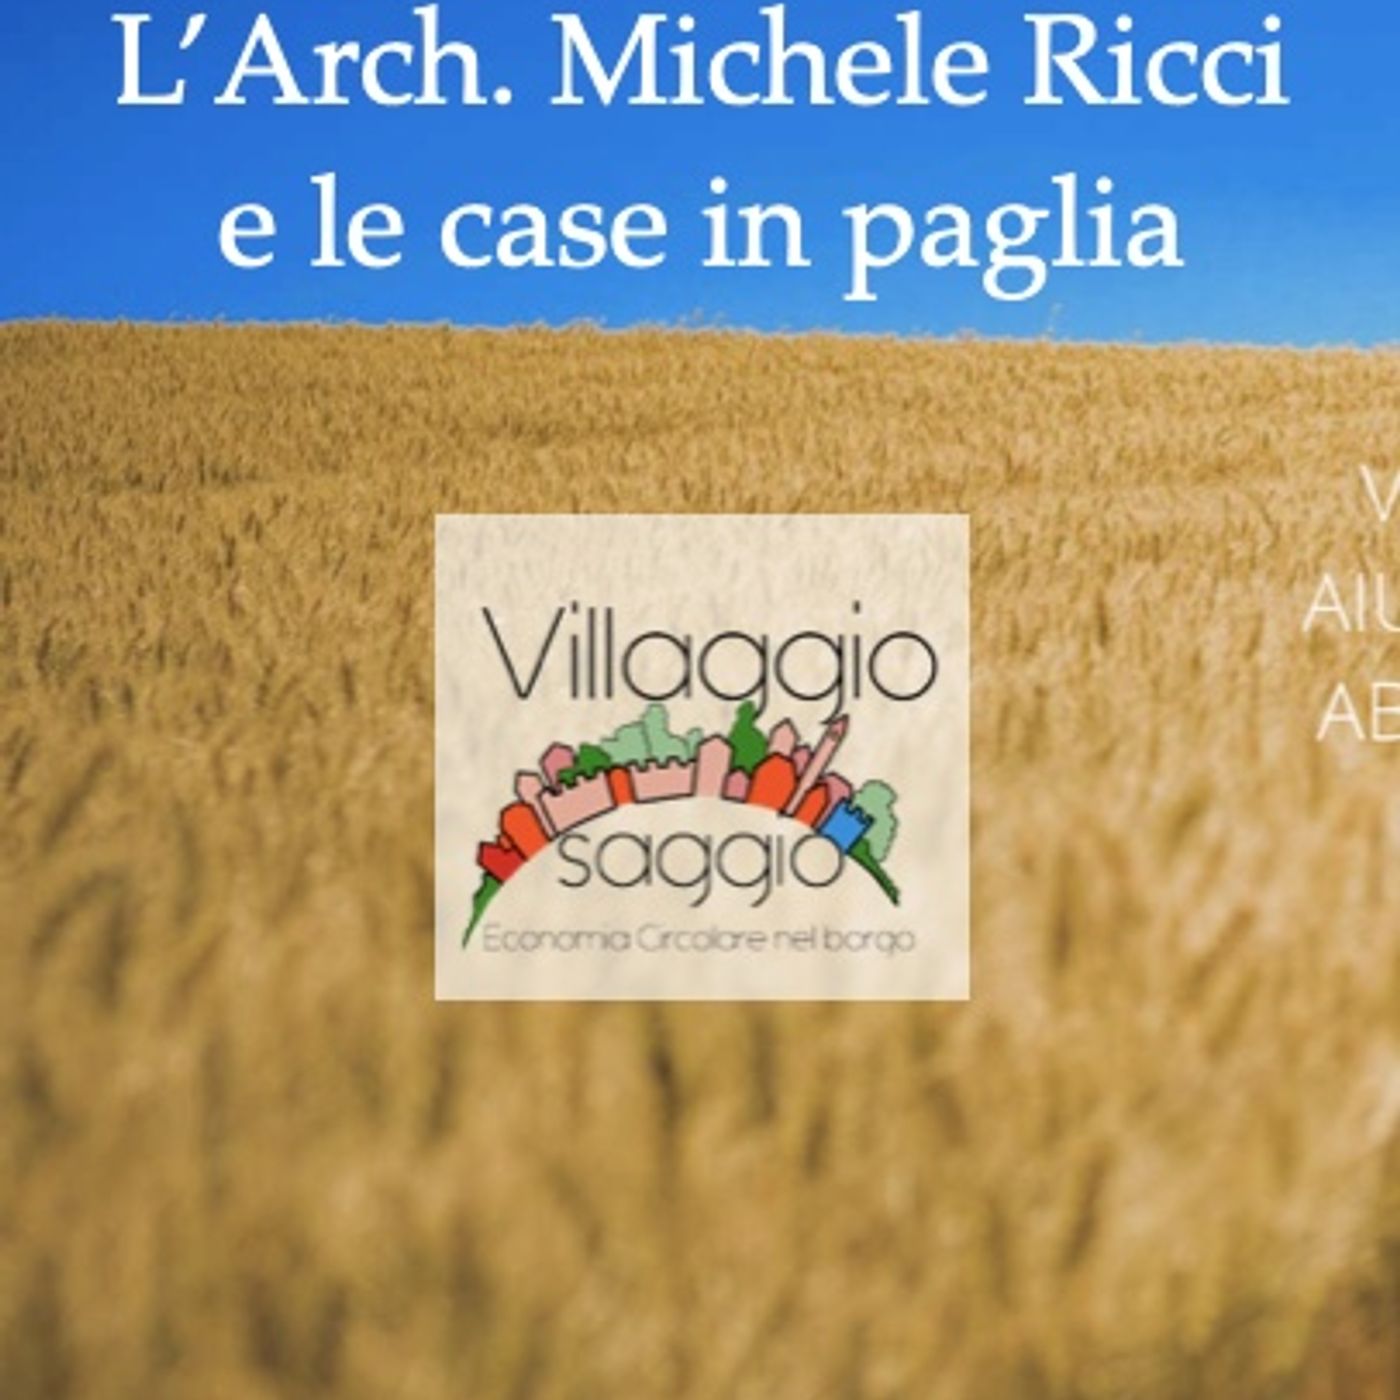 Case in paglia - Michele Ricci architetto